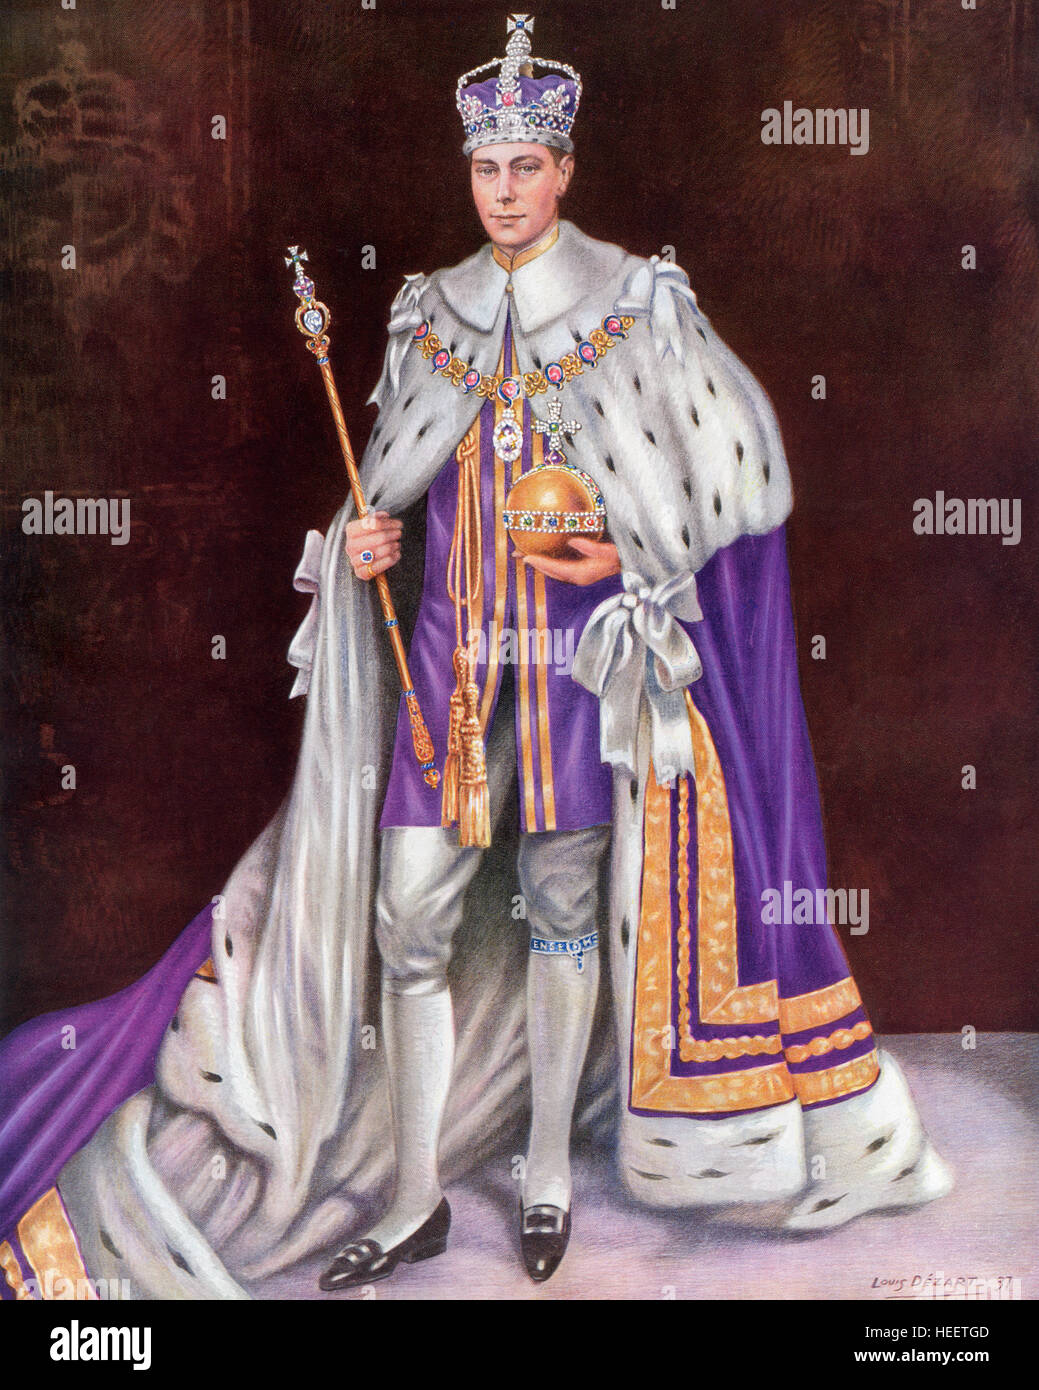 George VI, 1895 - 1952. Roi du Royaume-Uni et des Dominions du Commonwealth britannique. On voit ici le jour de son couronnement en 1936, portant la robe de couronnement et la couronne et la tenue de l'Orb et son sceptre. Banque D'Images